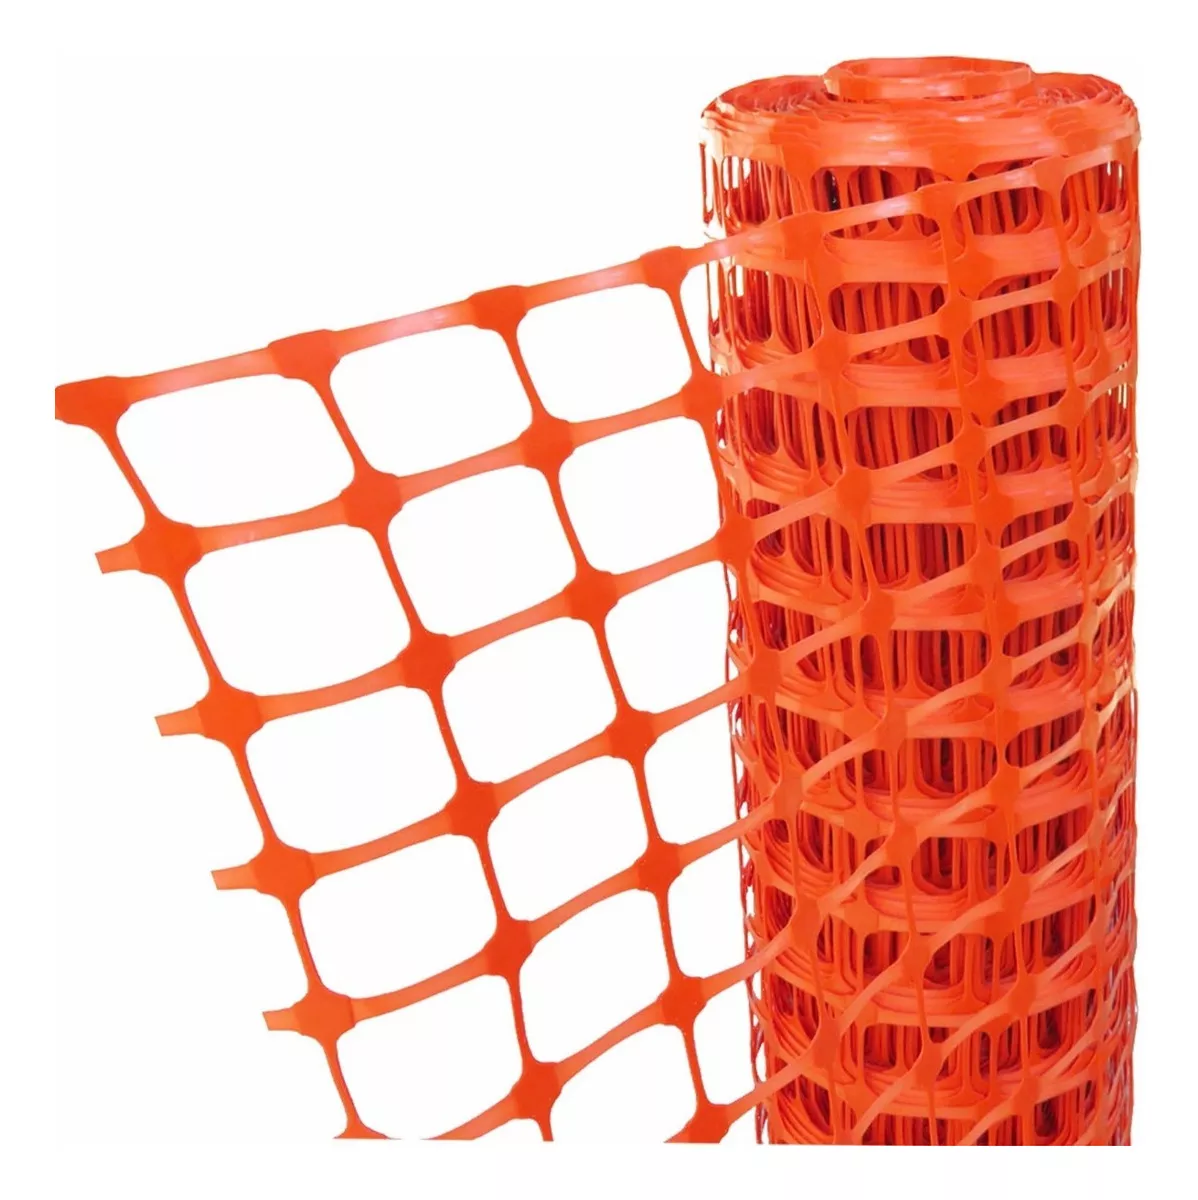 Segunda imagen para búsqueda de malla plastica seguridad naranja